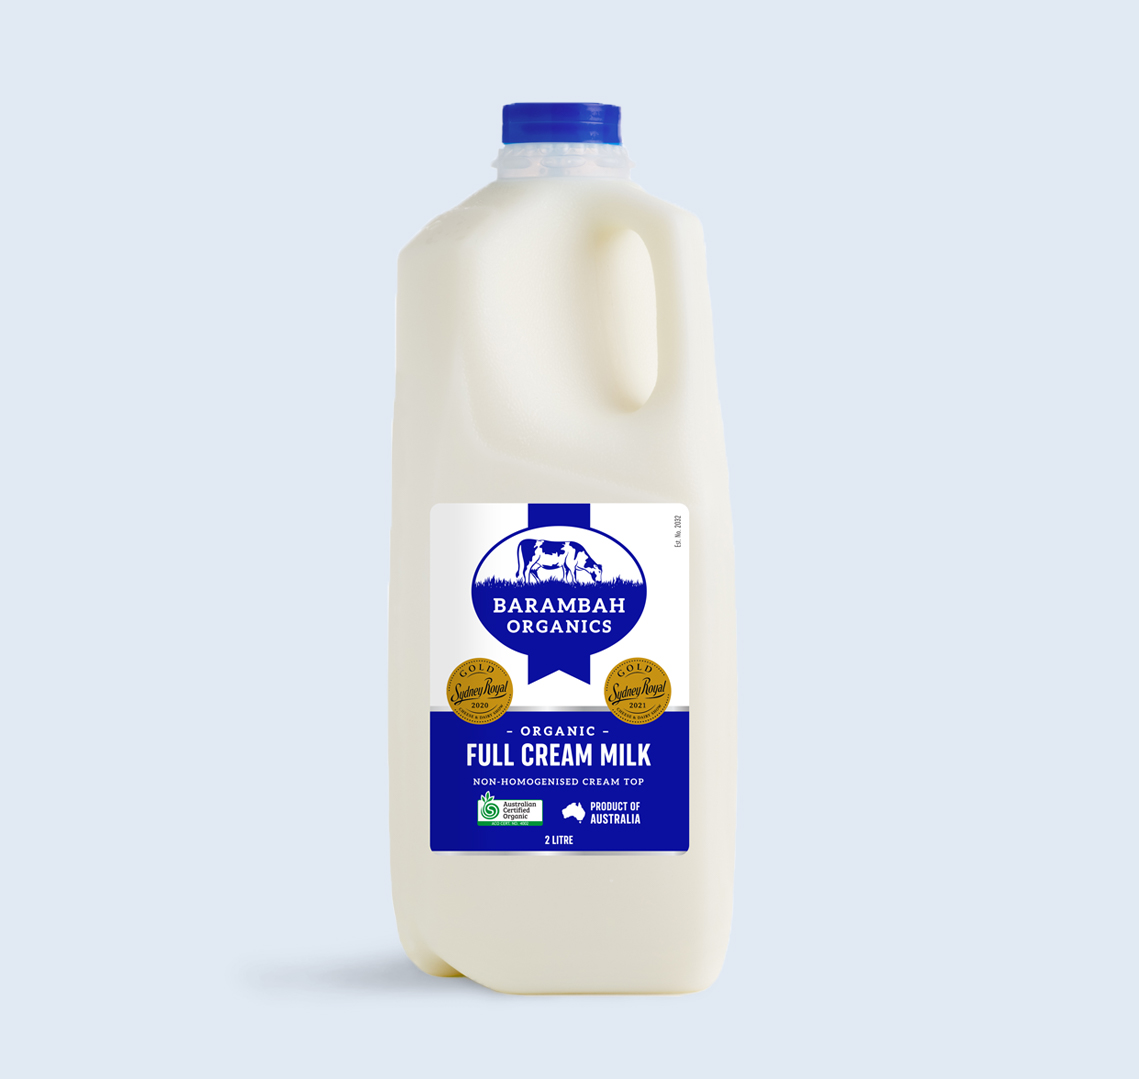 Horror Incomodidad Fuera de servicio Organic Full Cream Milk One Liter | Barambah Organics